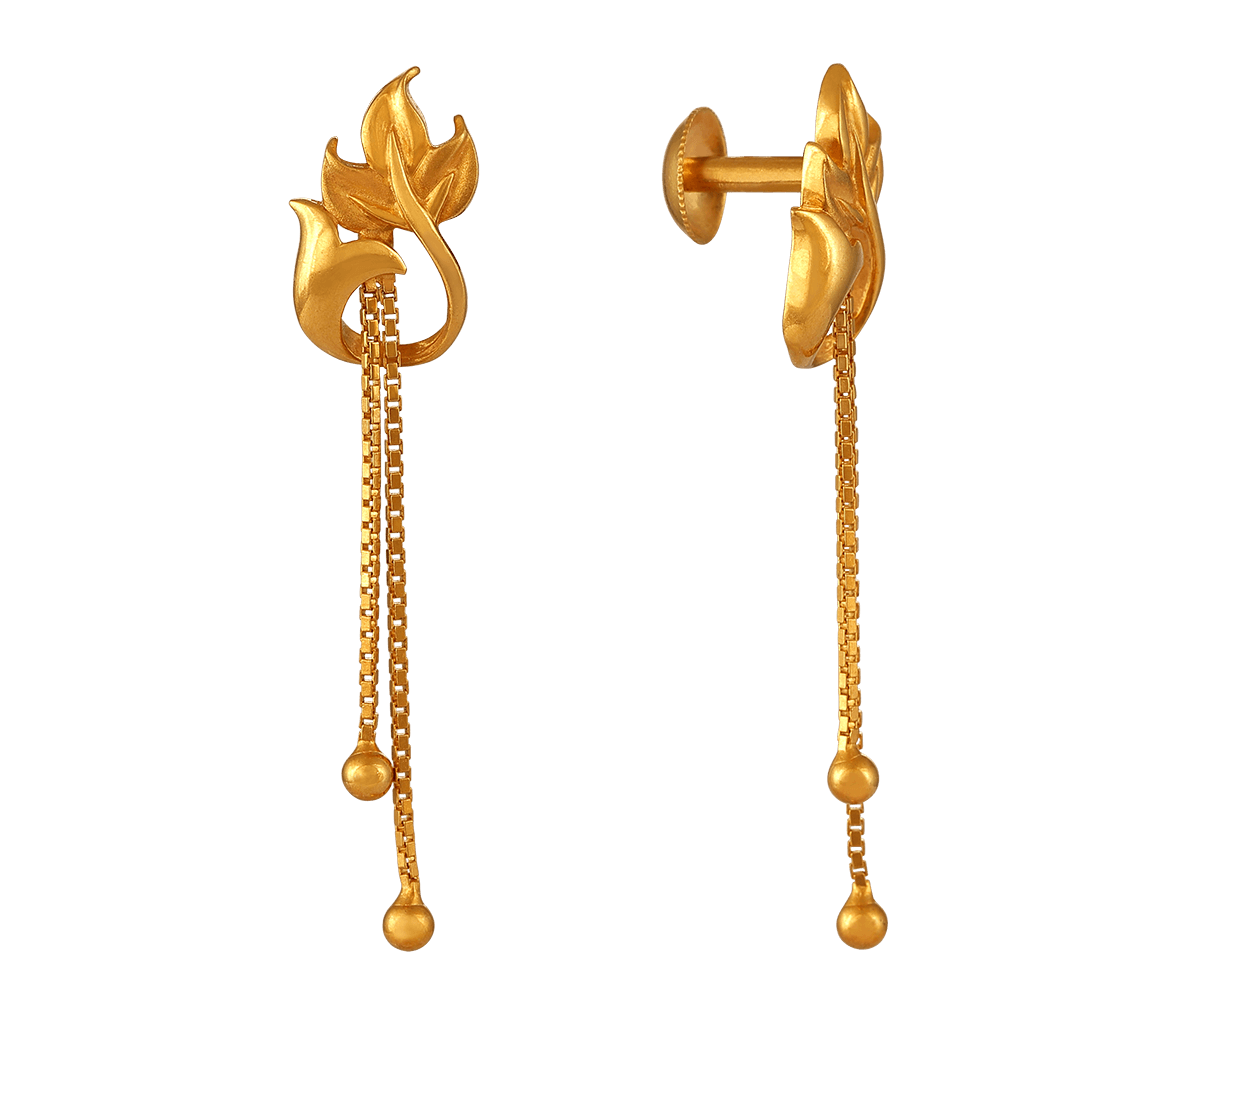 Baby Earrings in Gold -Gold Earrings for Kids -Small Hoop Earrings -22K Gold  -Indian Gold Jewelry -Buy Online